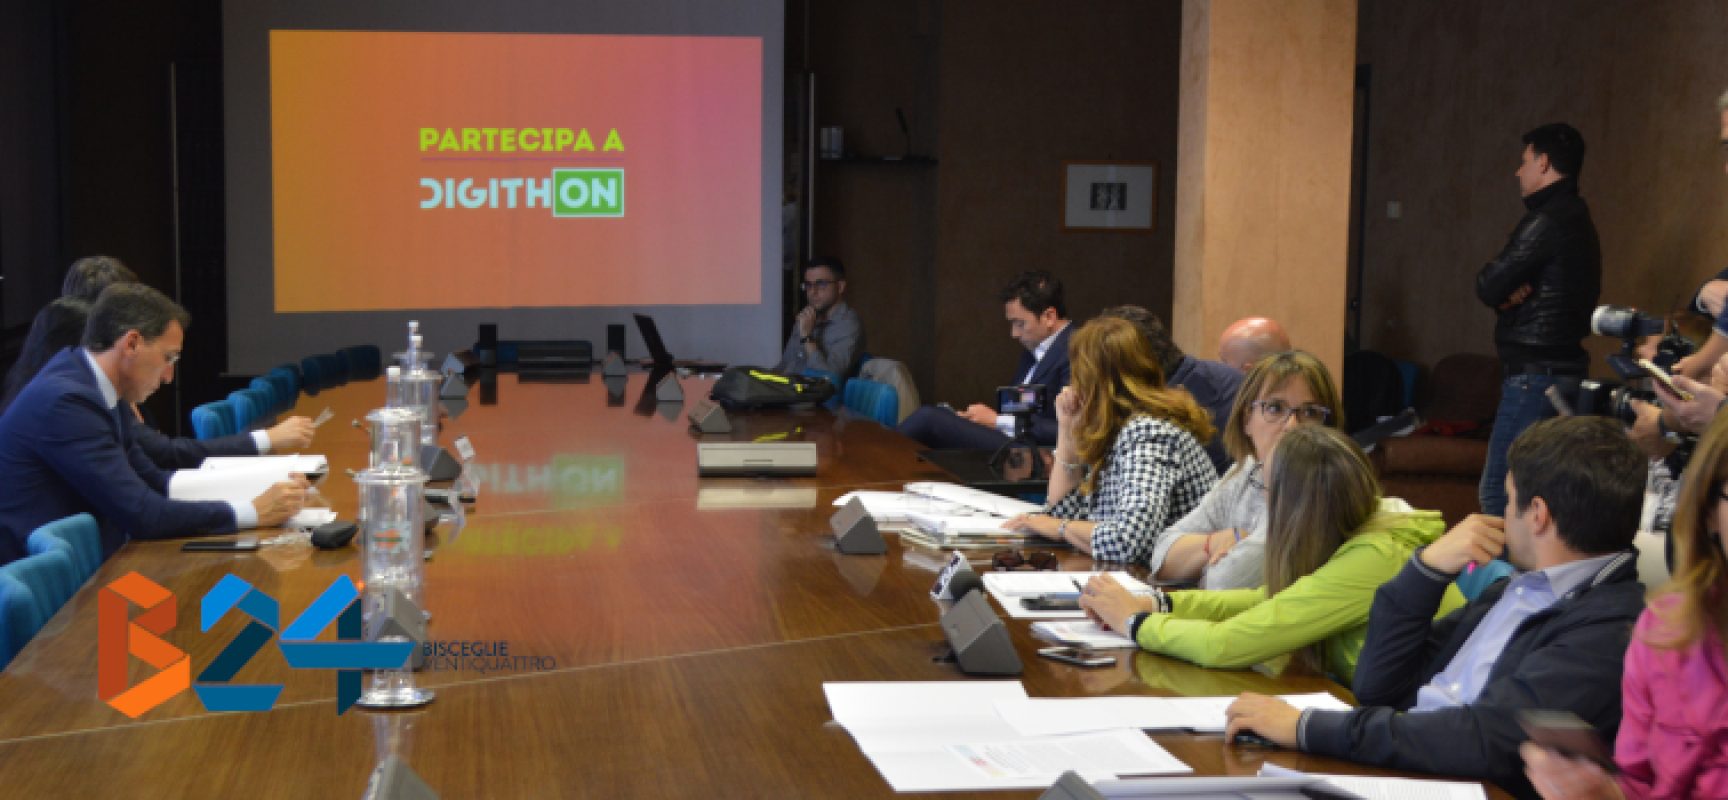 DigithON 2018, aperta la call per le startup, Boccia: “Puglia regina di innovazione e bellezza”